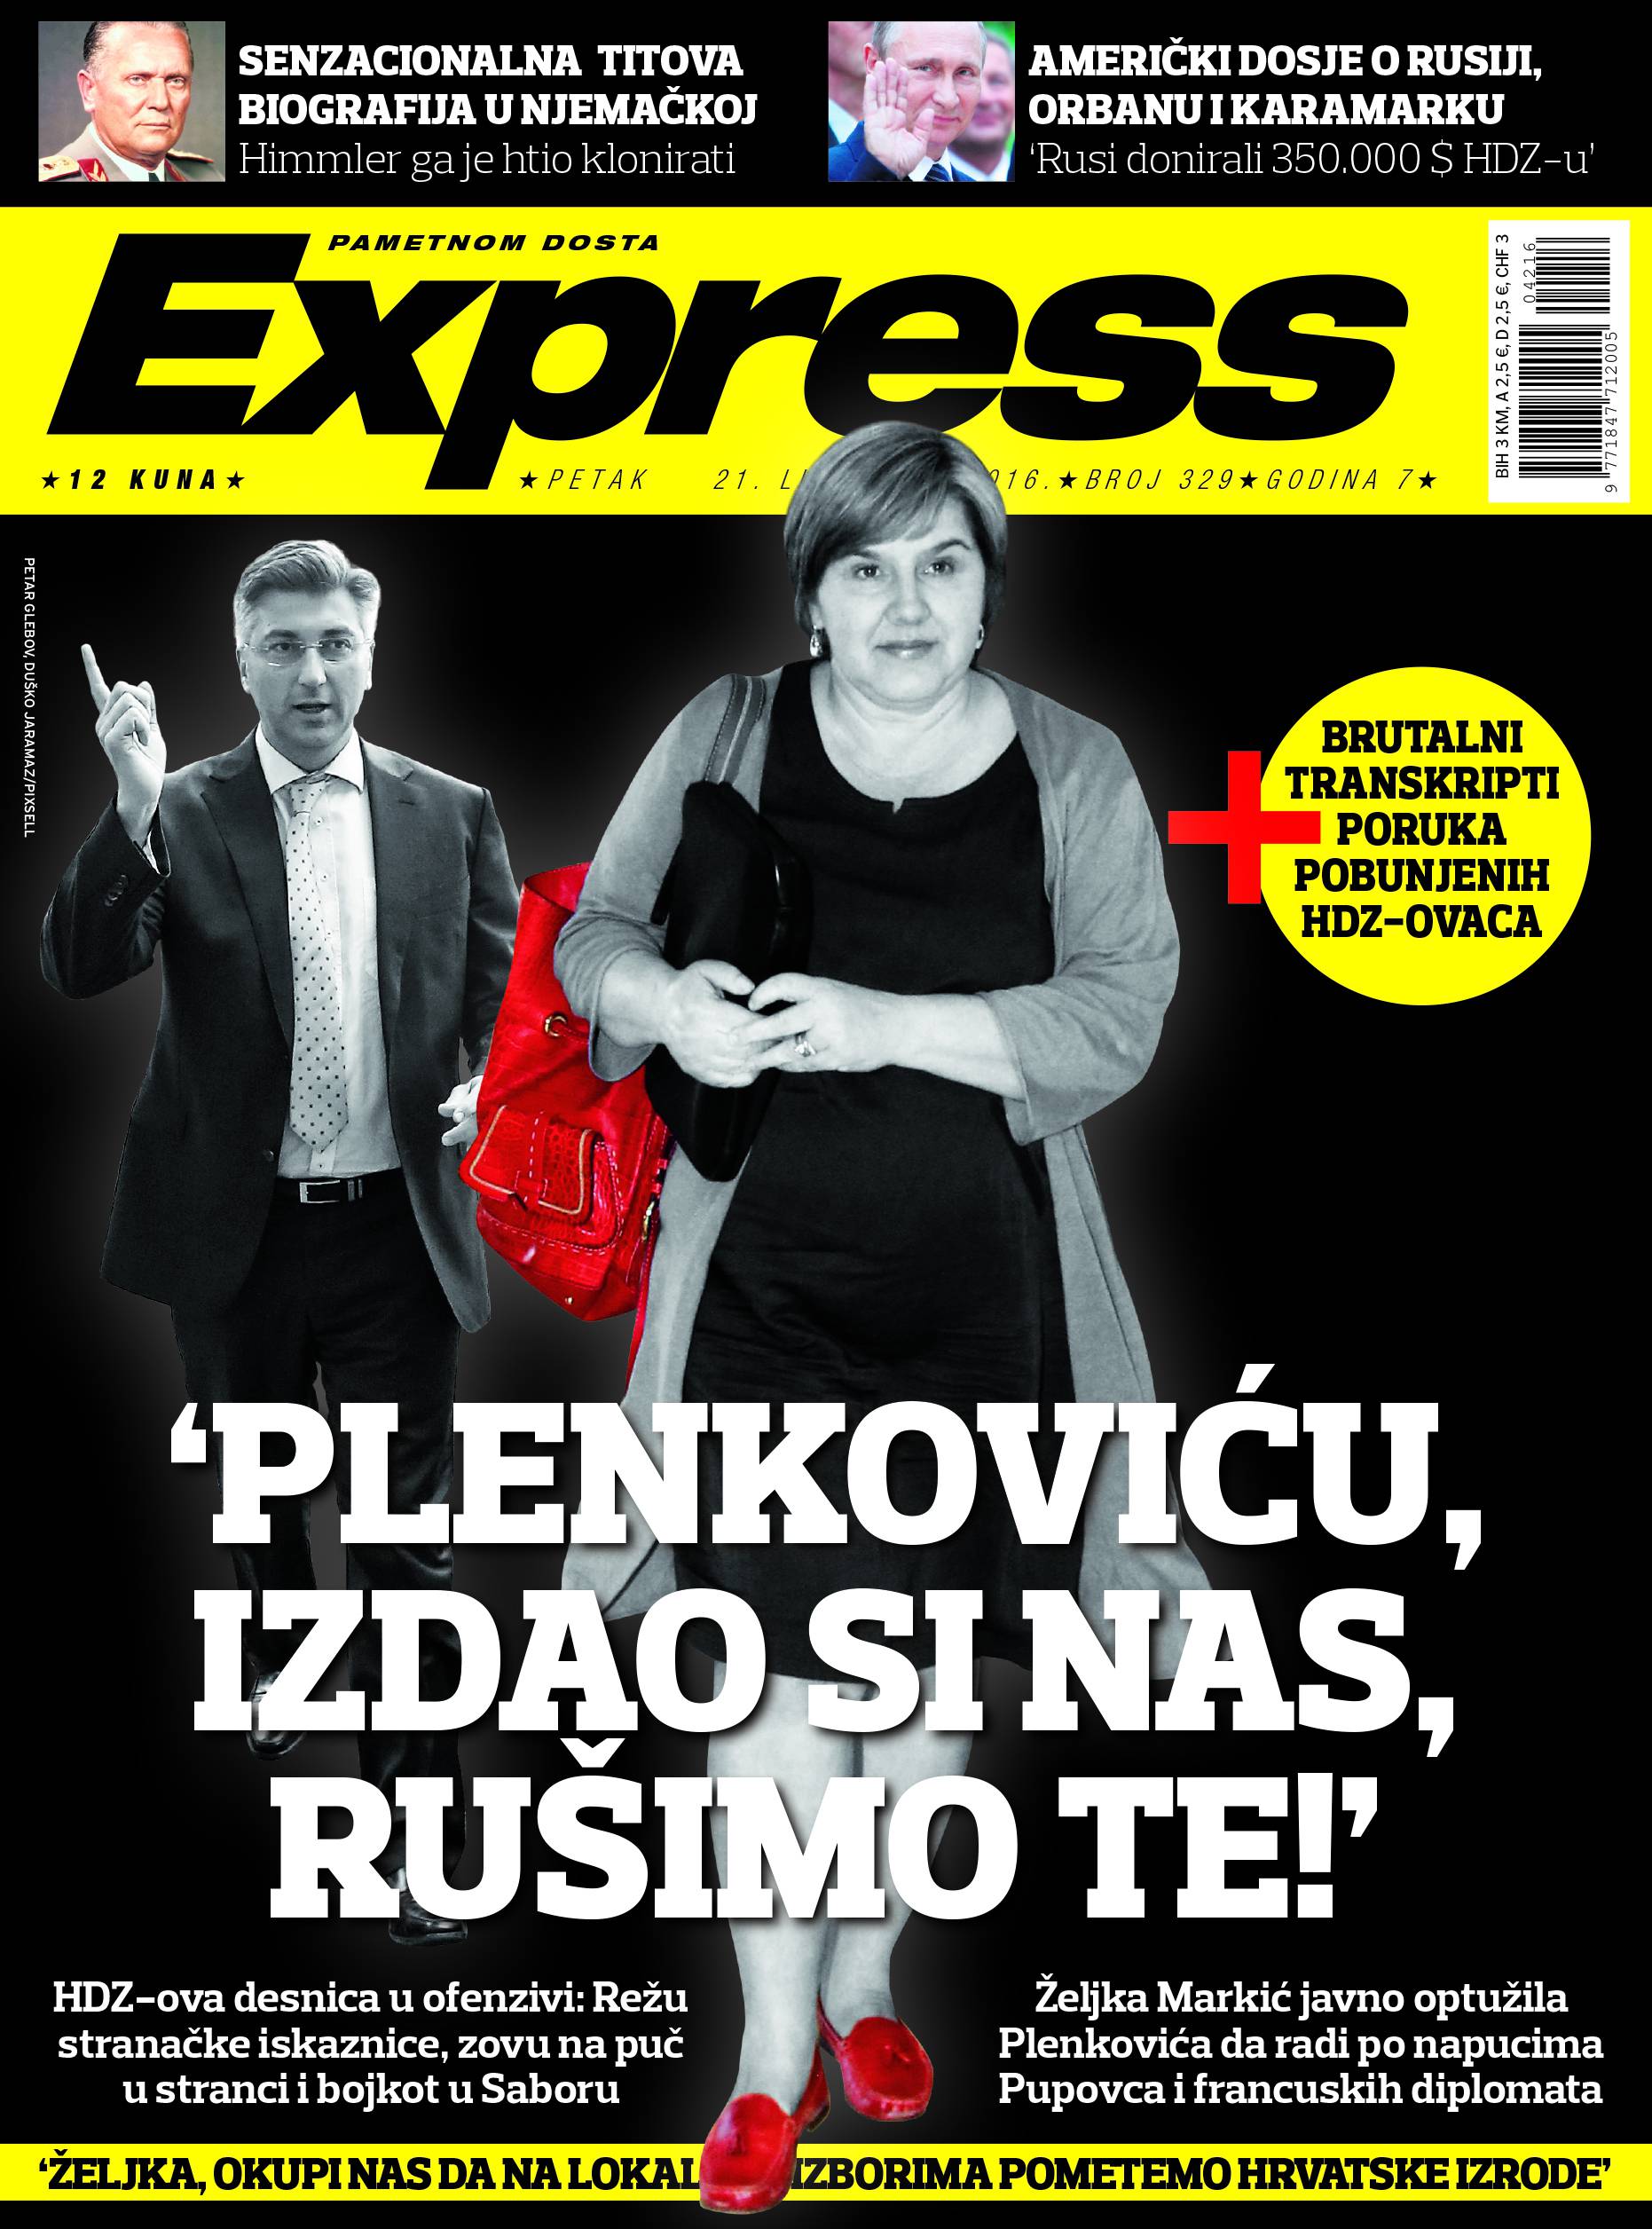 Tajna akcija protiv Plenkovića: "Izdao si desnicu, rušimo te!"